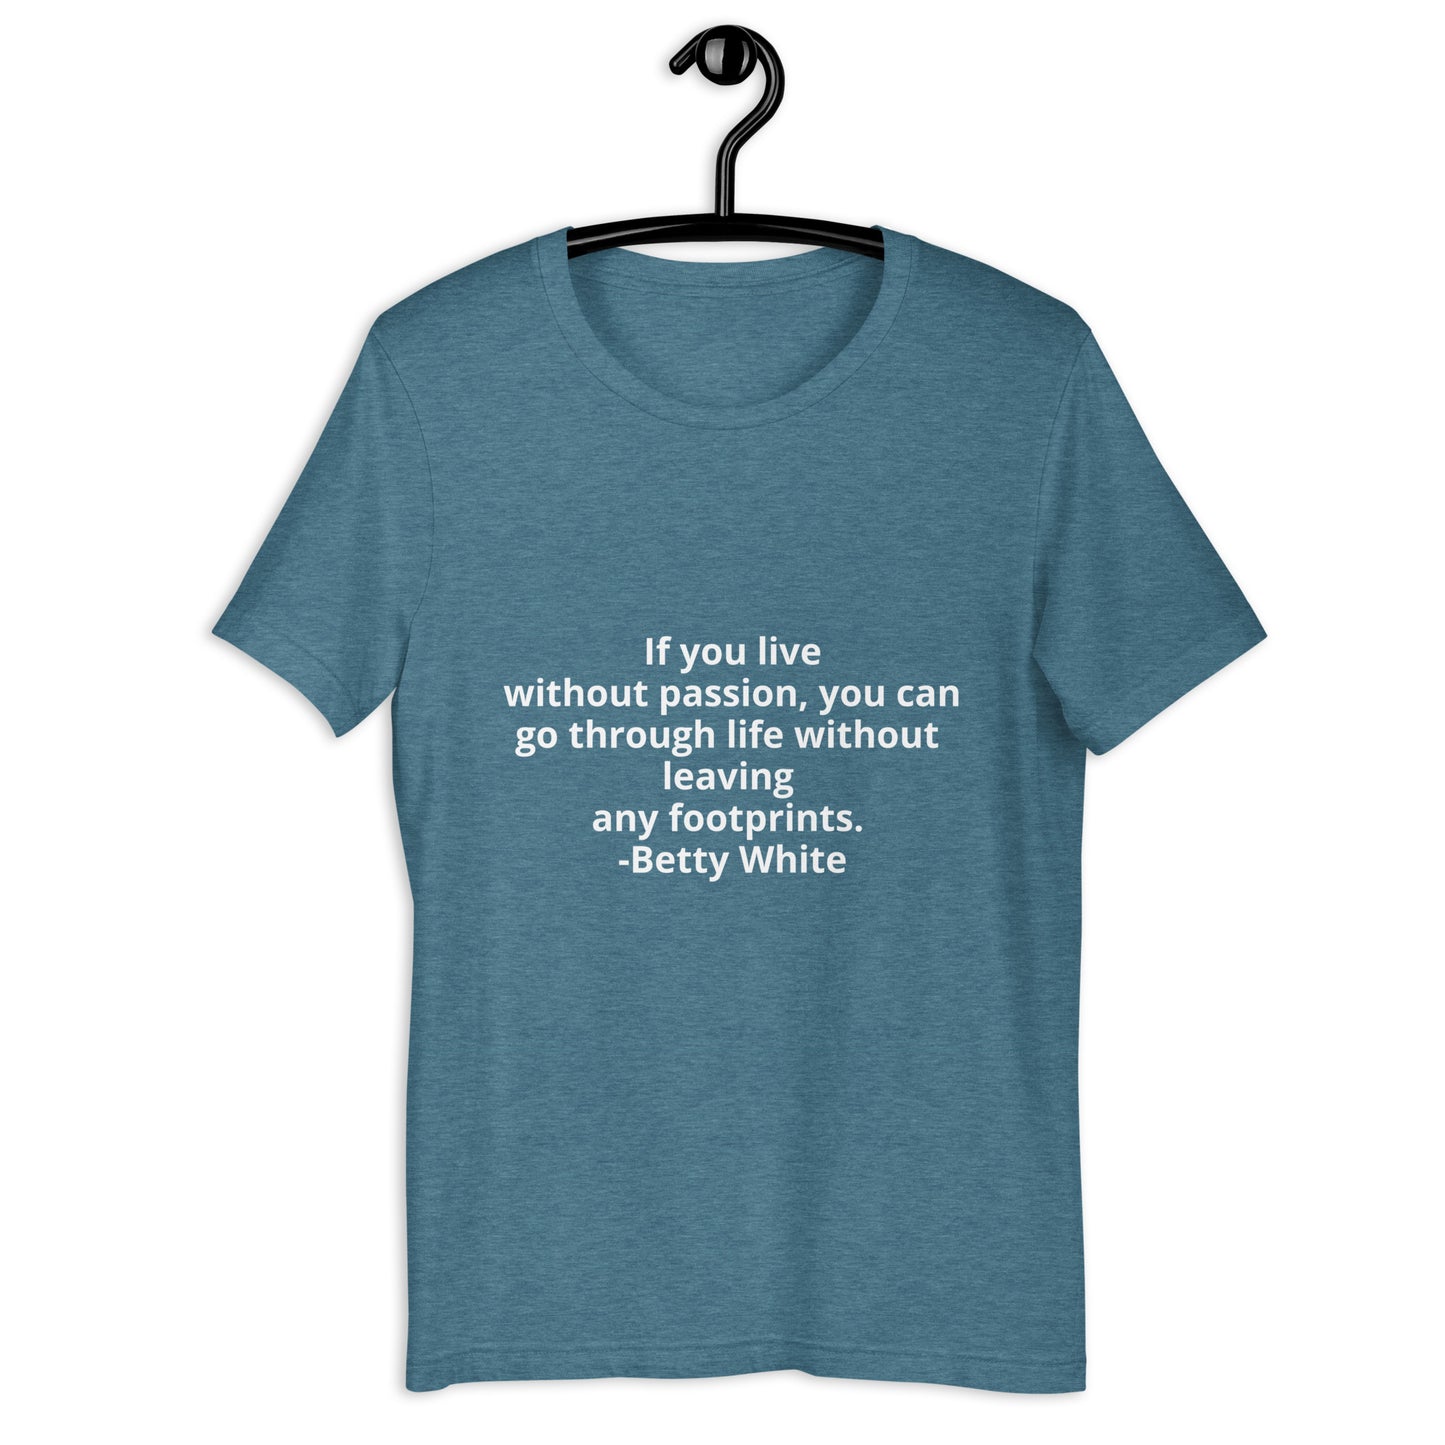 Betty White quote Unisex t-shirt